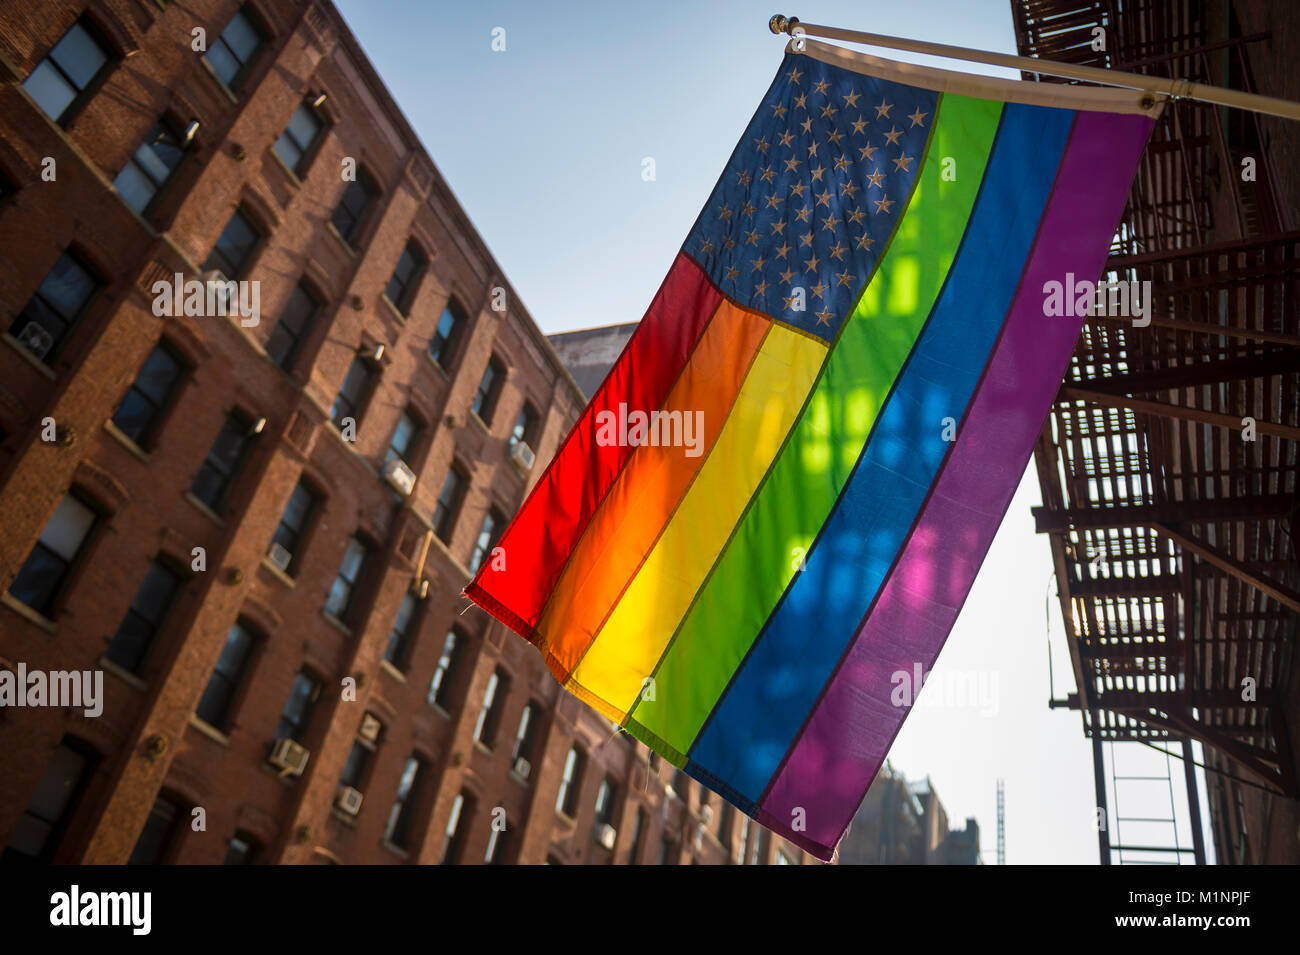 Drapeau américain avec des étoiles et rayures arc-en-ciel de la fierté gaie qui pendait dans le bâtiment traditionnel de Brooklyn ville libérale de New York Banque D'Images